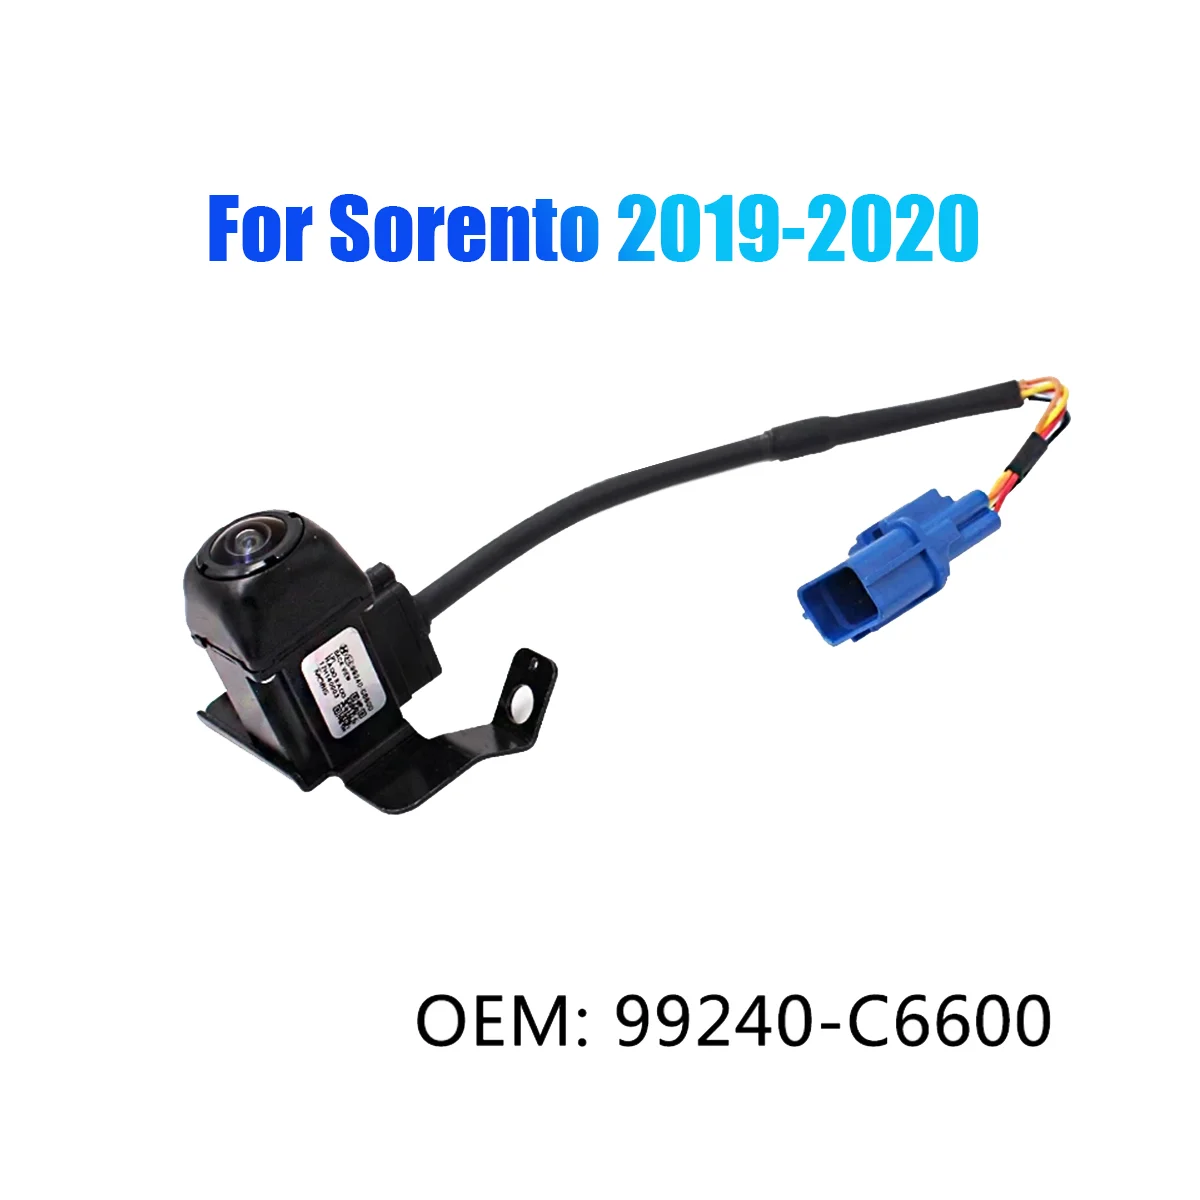 99240-C6600 חדש מצלמה אחורית הפוך מצלמה חניה לסייע מצלמה גיבוי עבור קיה סורנטו 2019-2020 - 1